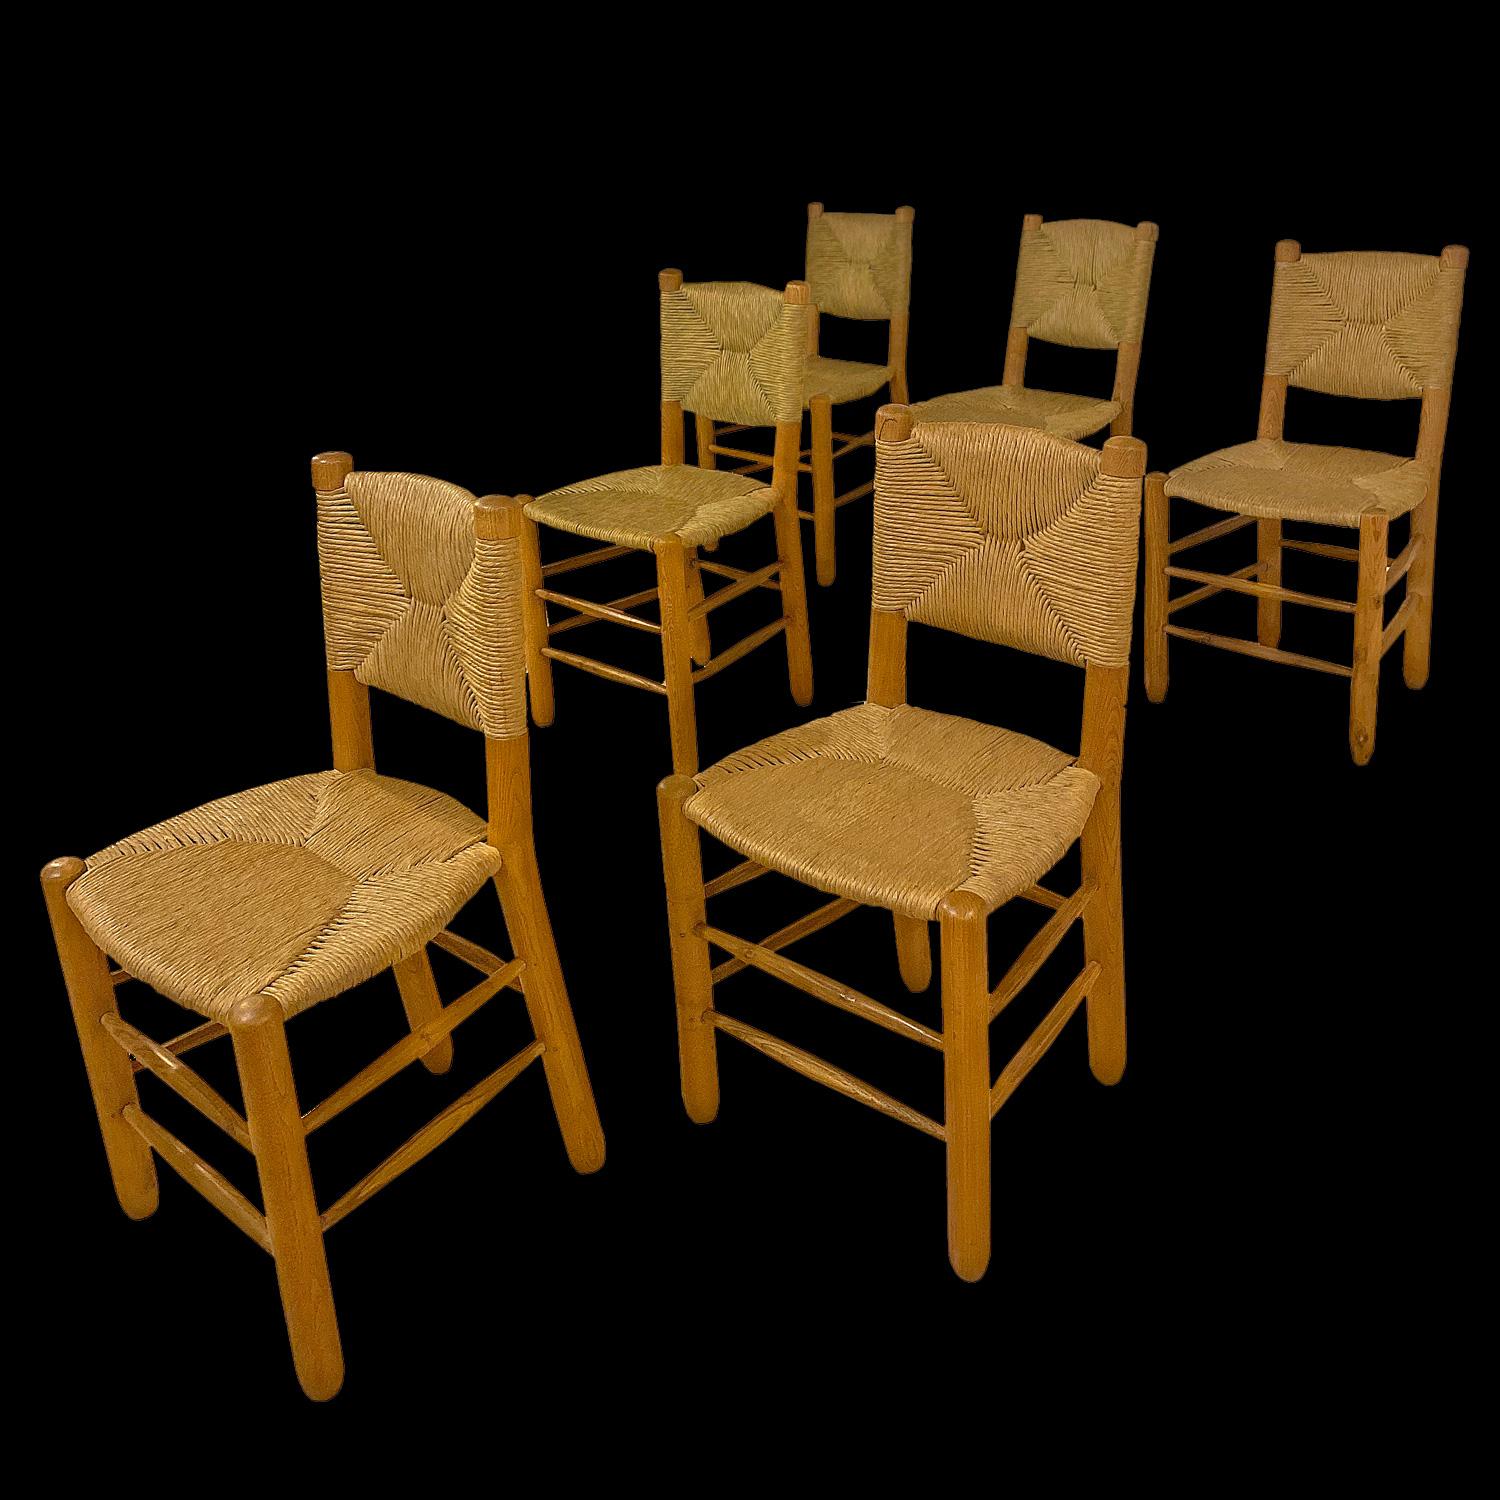 Charlotte Perriand 
Un ensemble de 6 chaises paillées modèle Bauche de Charlotte Perriand réalisées pendant la guerre à Grenoble où Pierre Jeanneret était résistant sous l'occupation. Il s'agit de pièces historiques qui n'ont rien à voir avec les